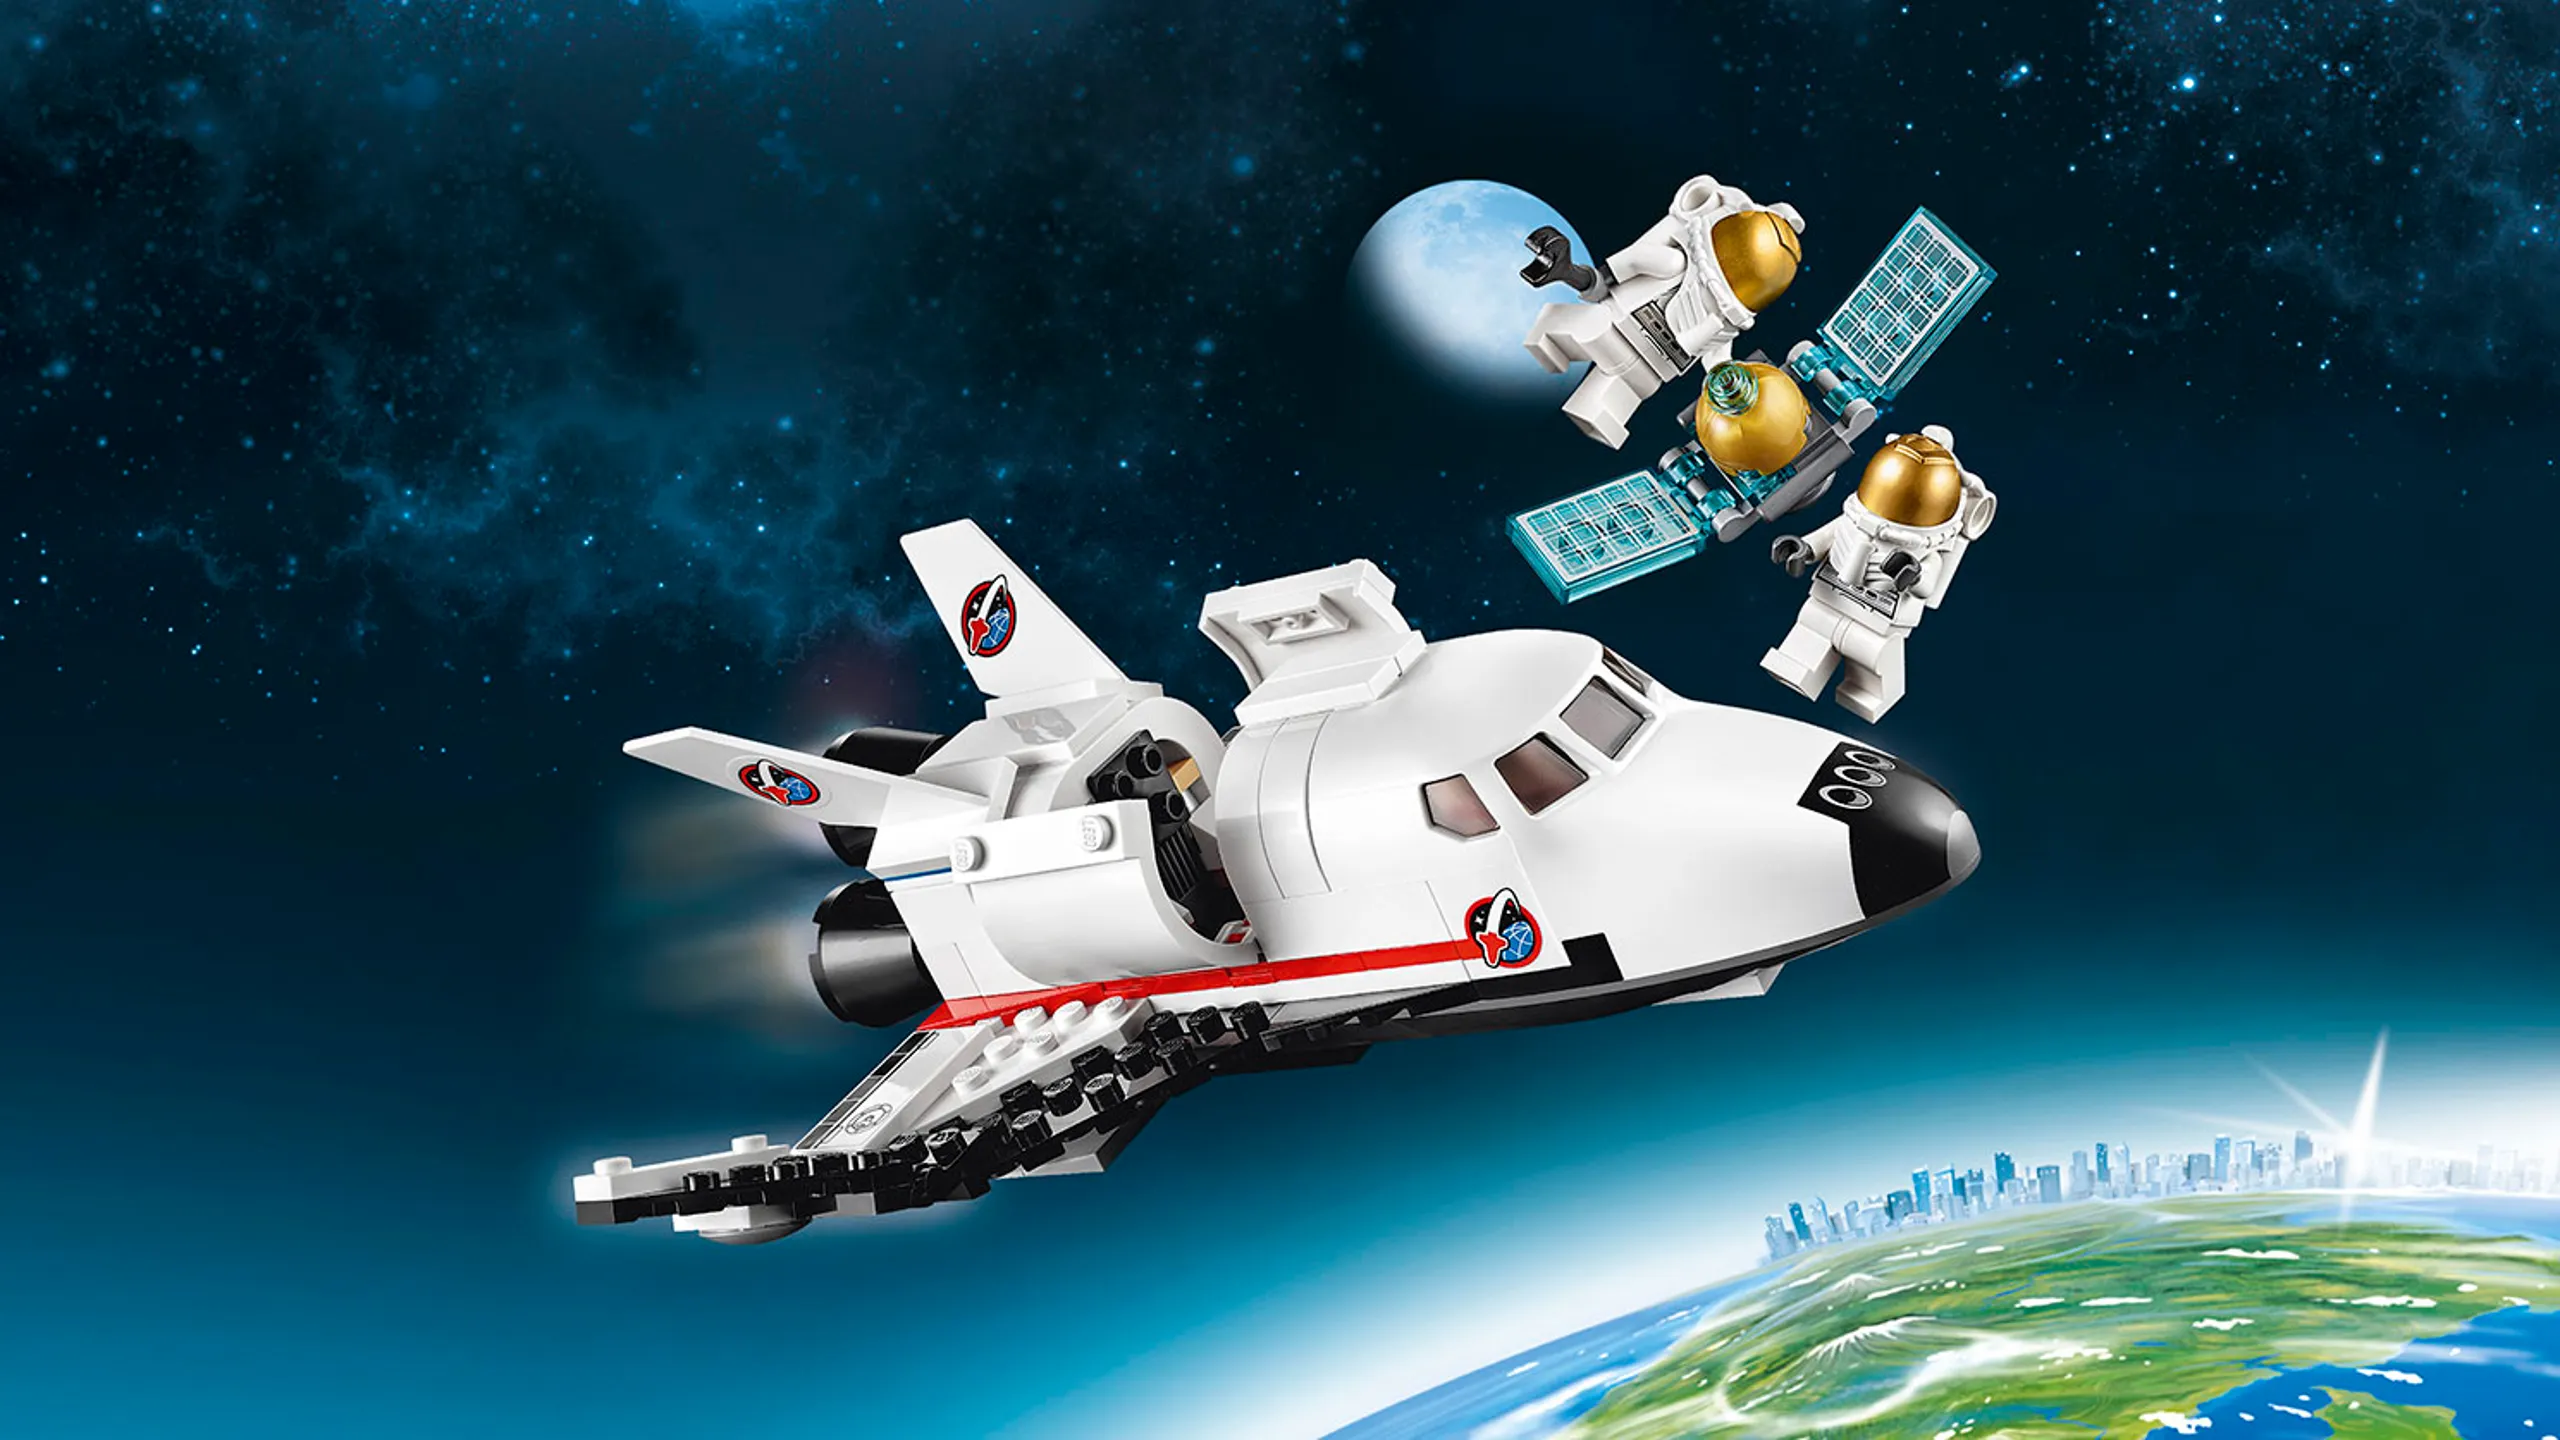 LEGO City Space shuttle in orbit - Utility Shuttle 60078